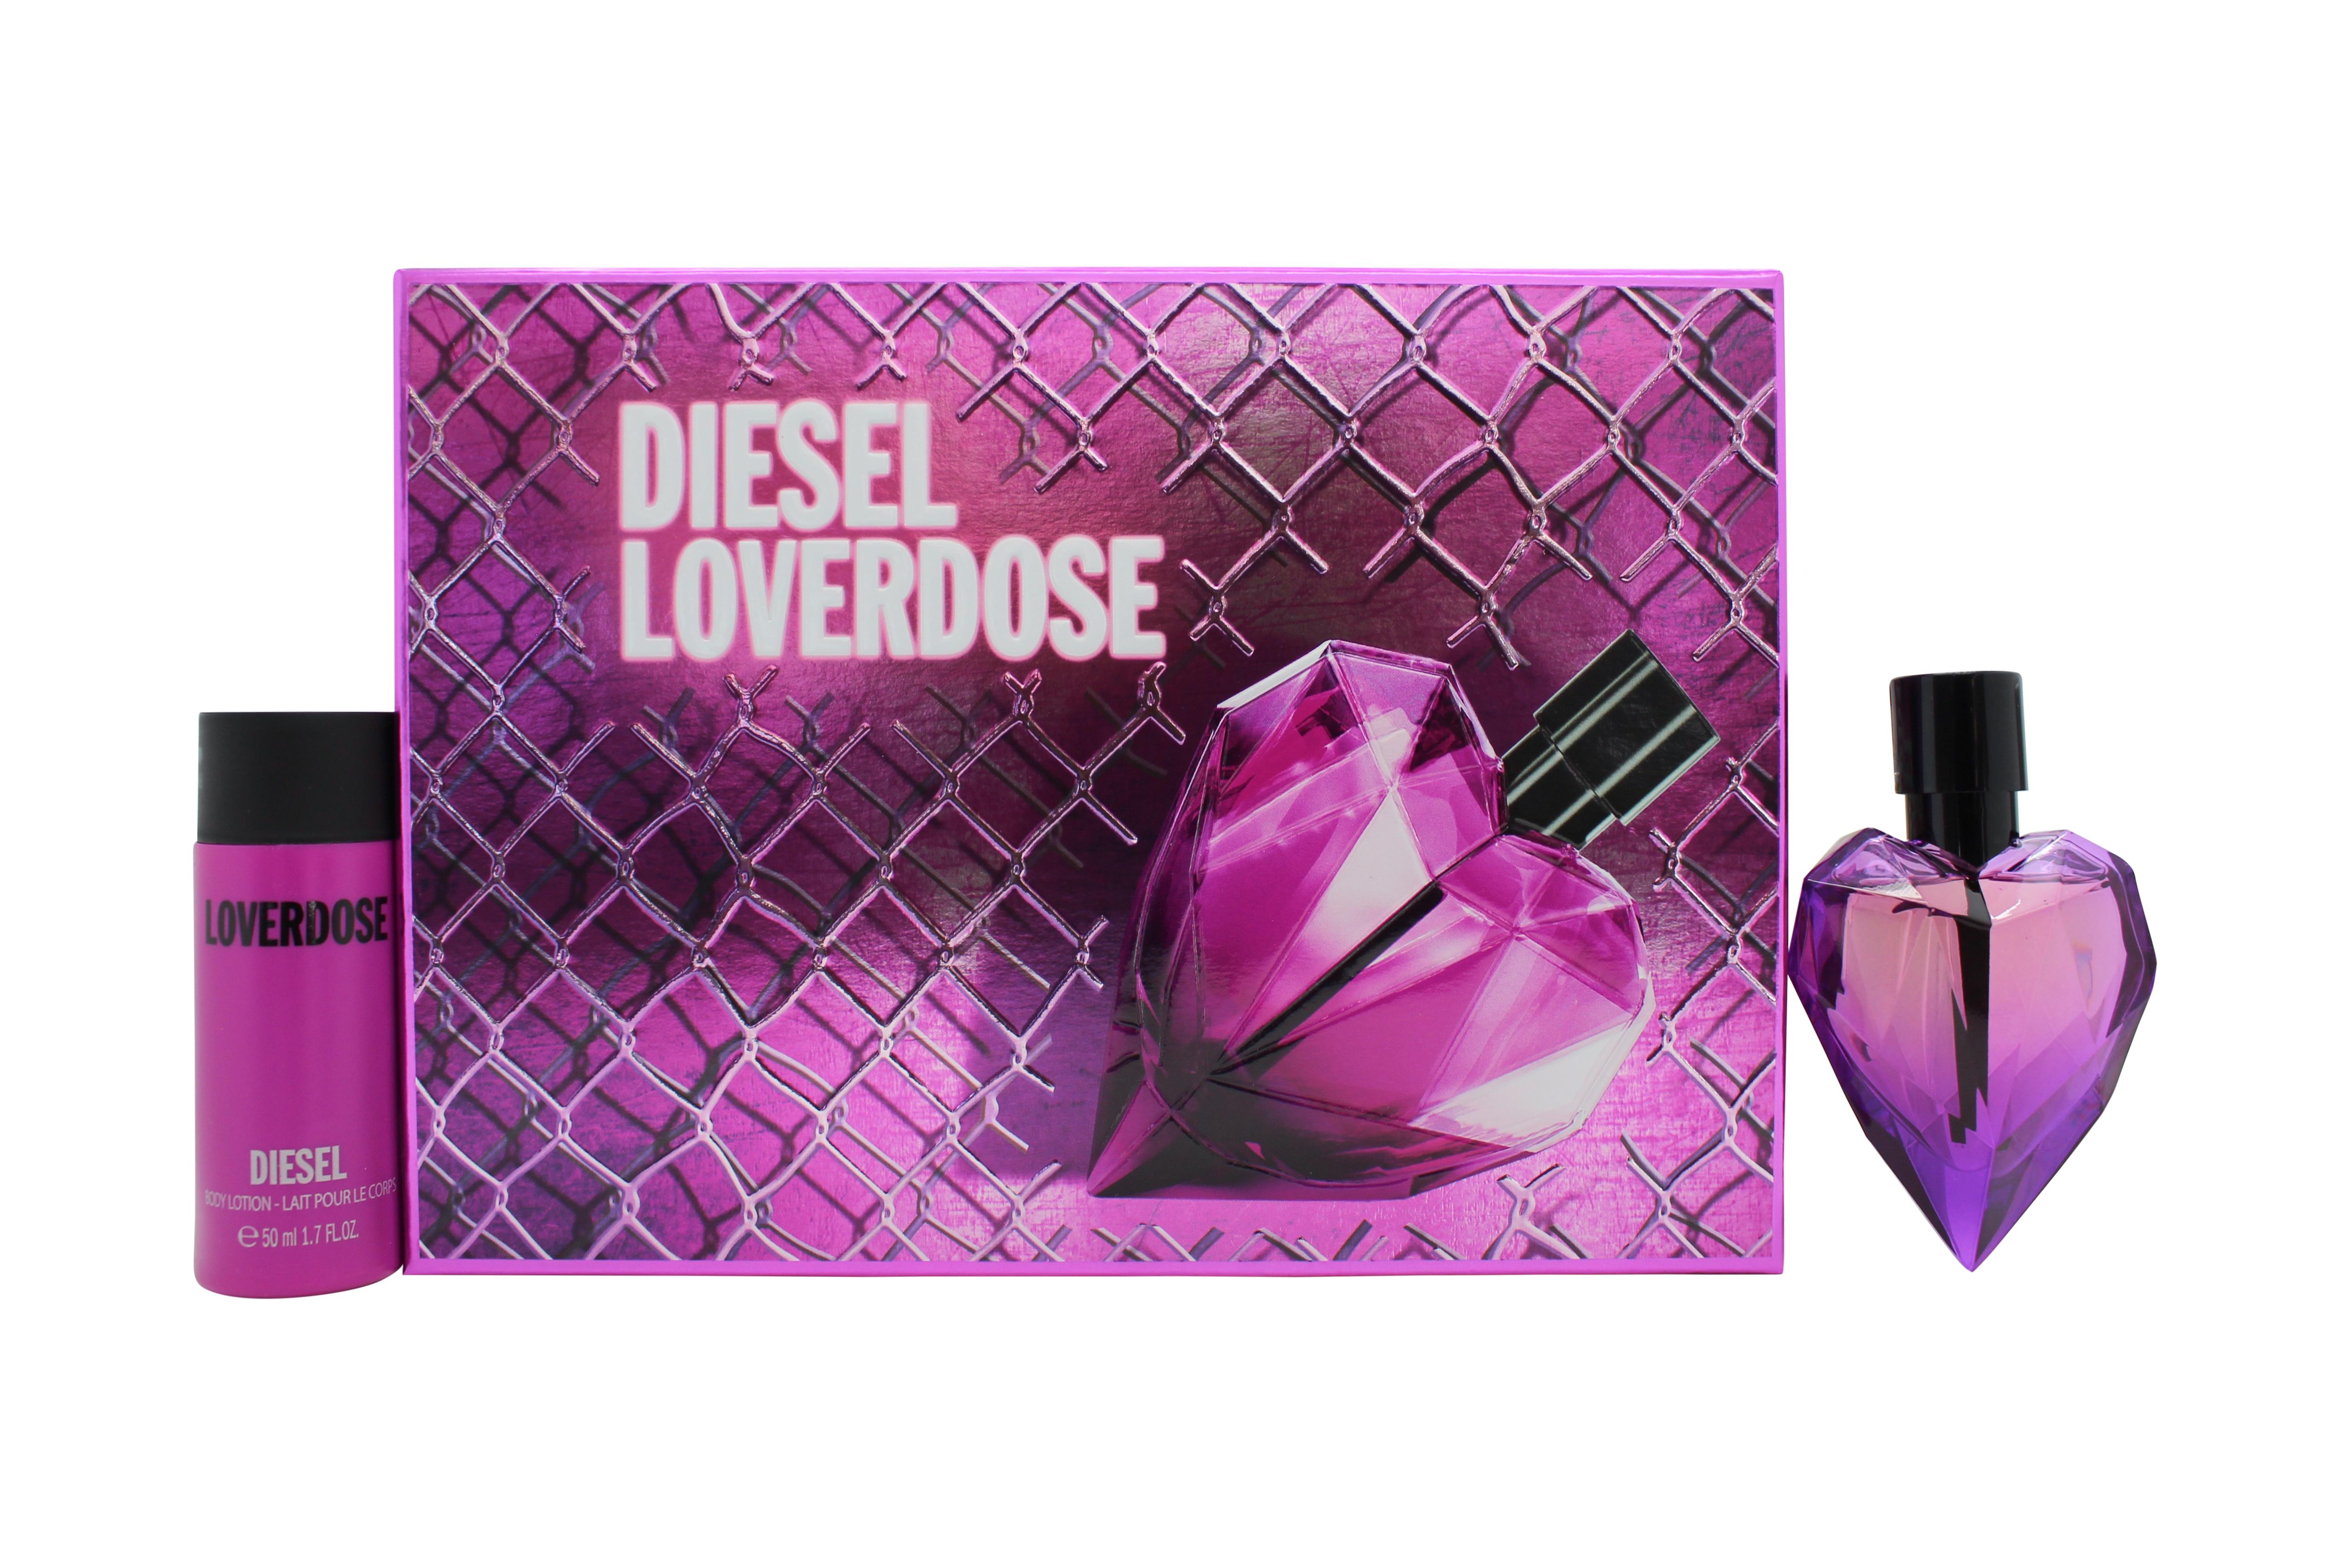 Diesel Loverdose Gift Set 30ml EDP + 50ml Body Lotion